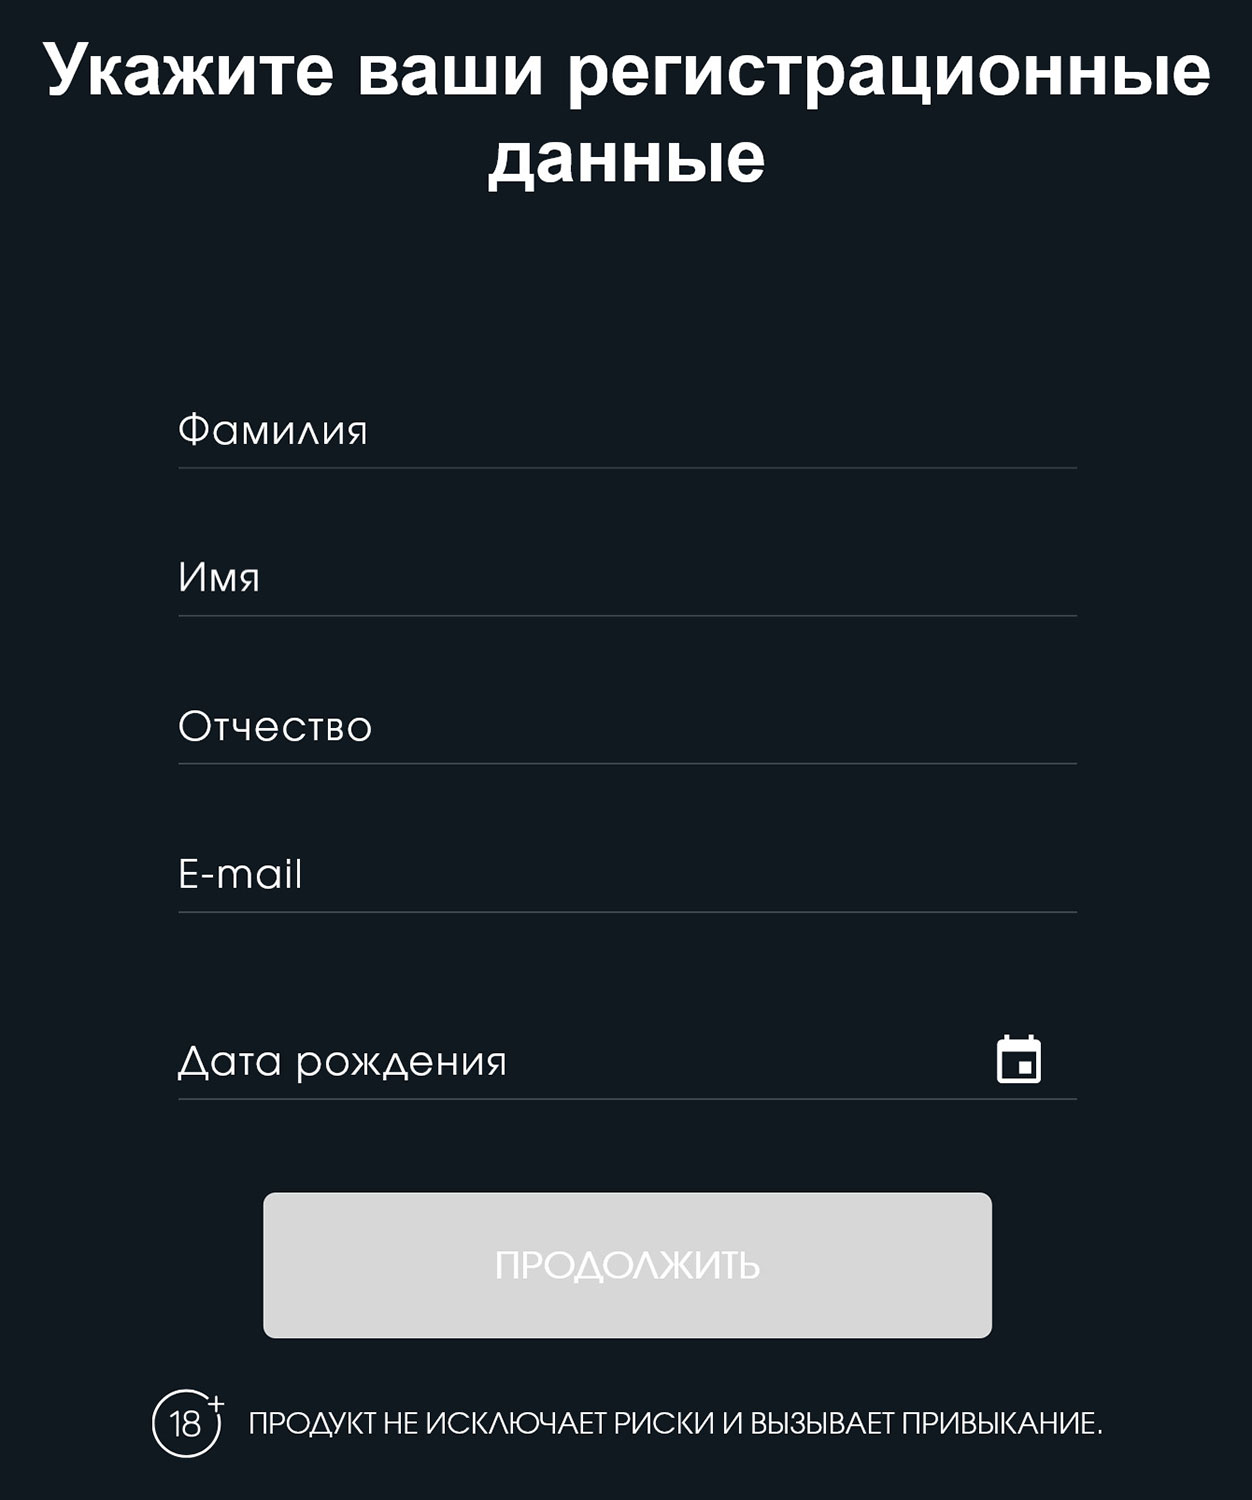 reg.ploom.ru нужен для получения QR-кода на специальную цену